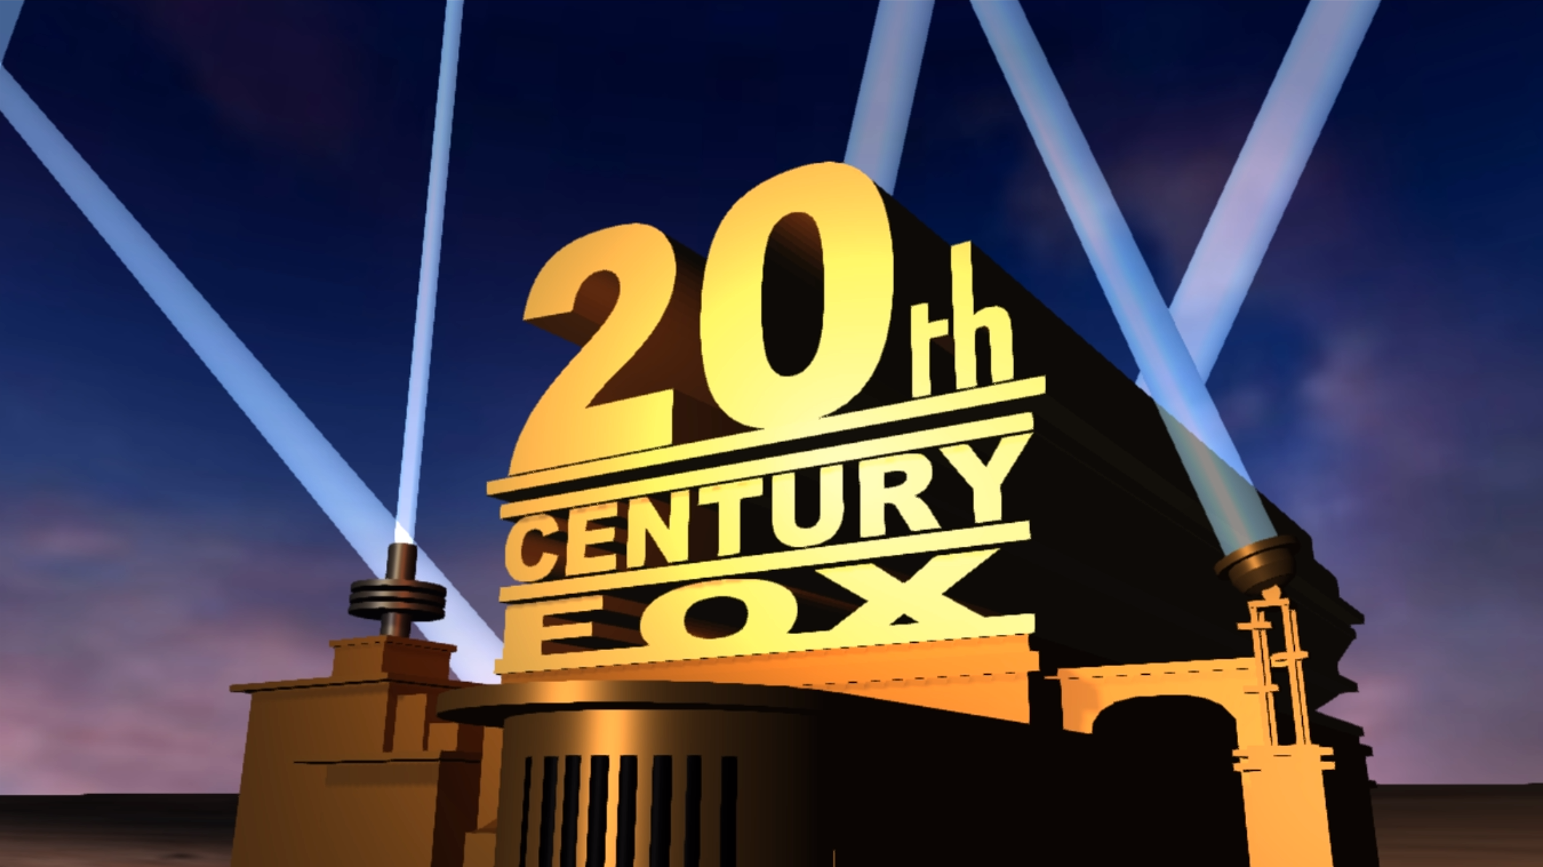 20th Century Fox Vipid Remake Panzoid By Kuli100 On Deviantart